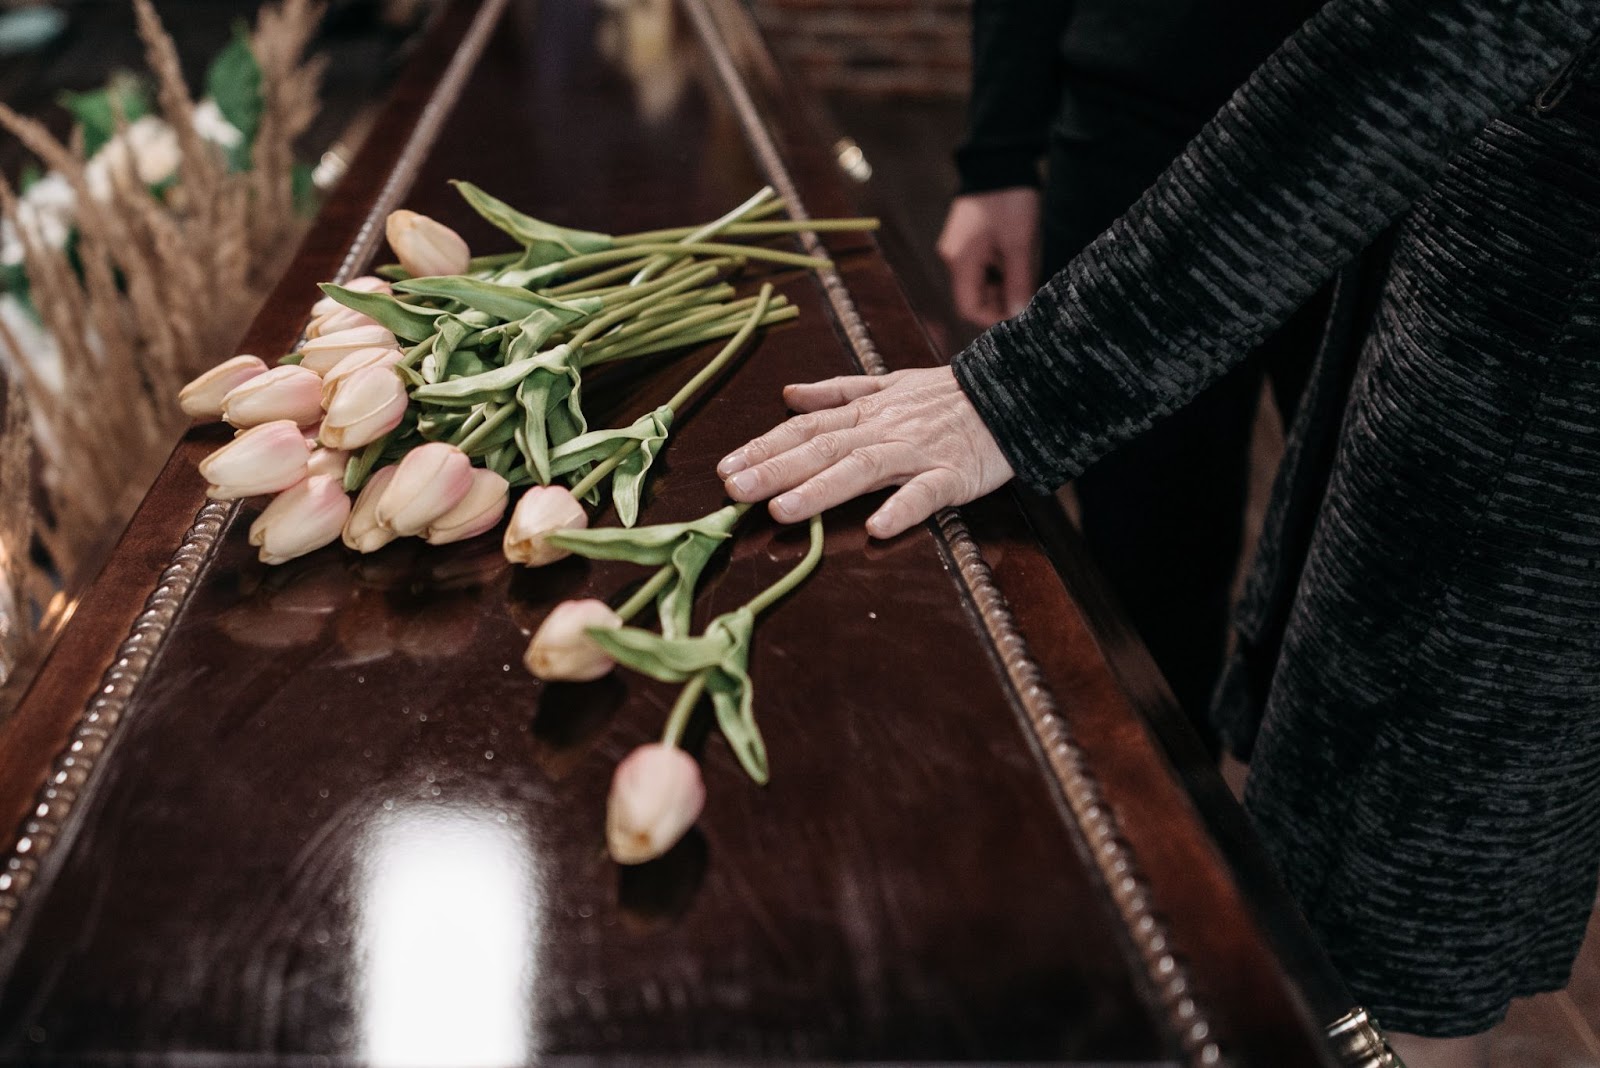 na foto vemos um caixão com algumas flores em cima, uma mulher está encostando sua mão em cima da urna funerária